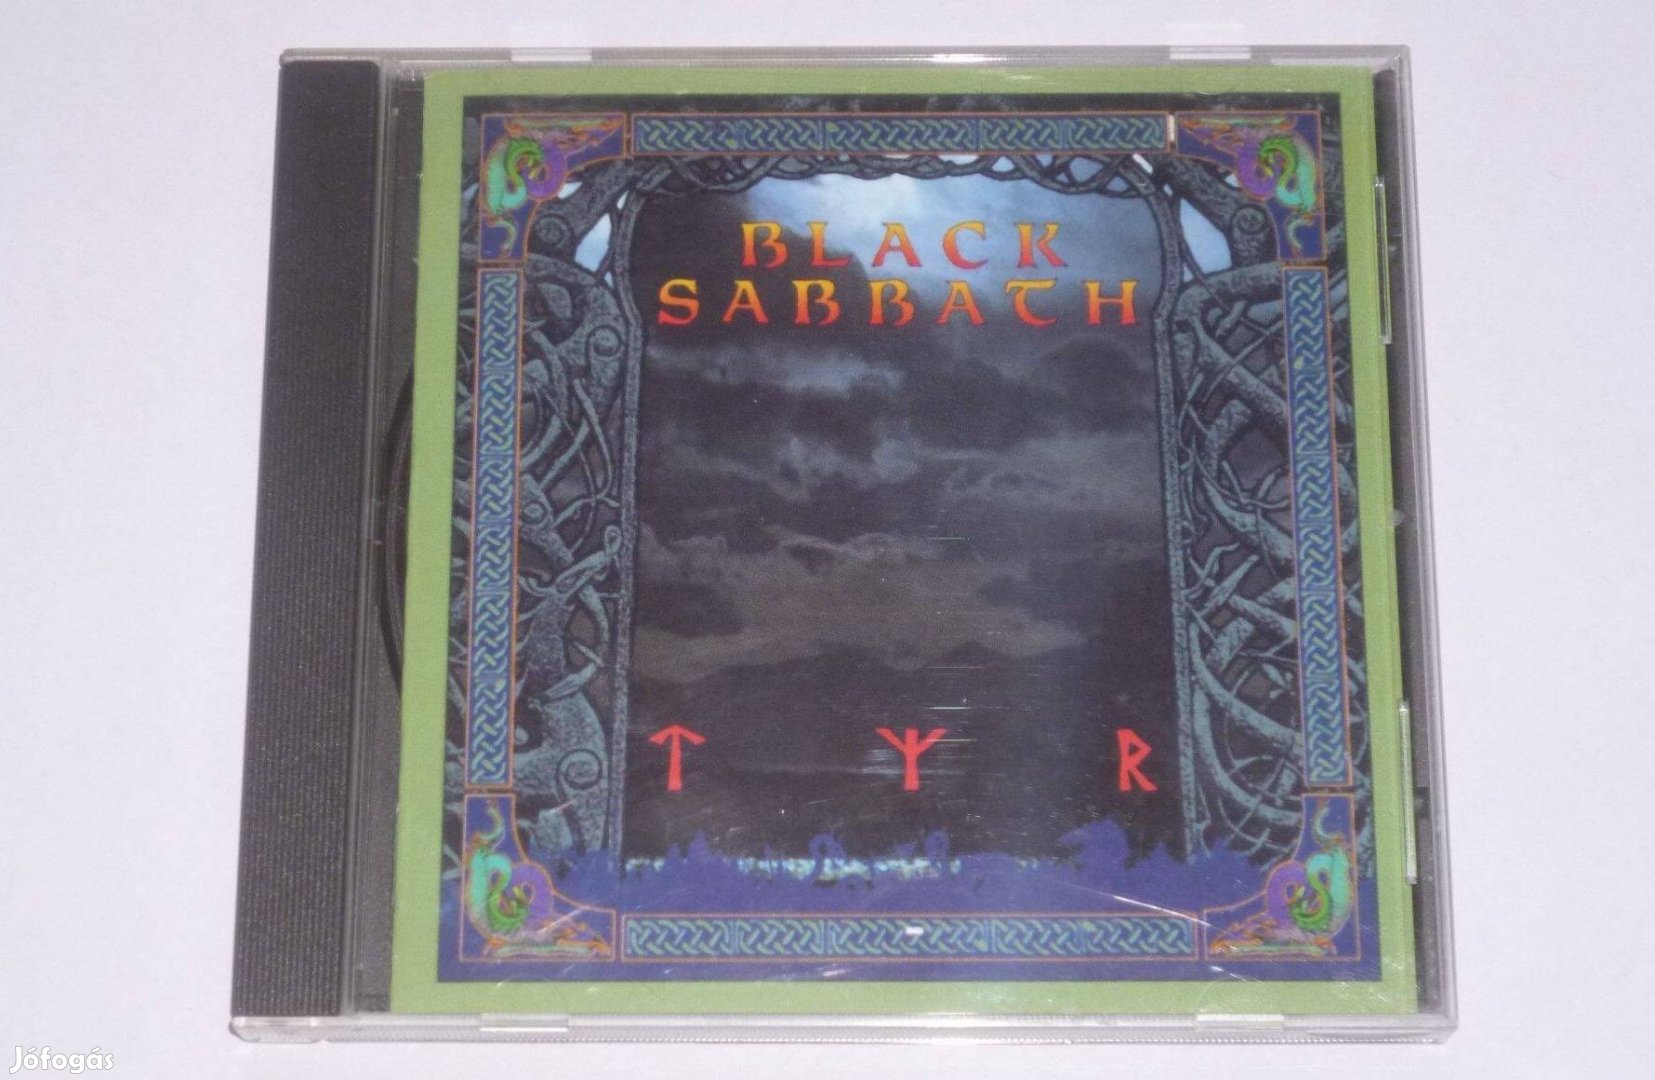 Black Sabbath - Tyr CD